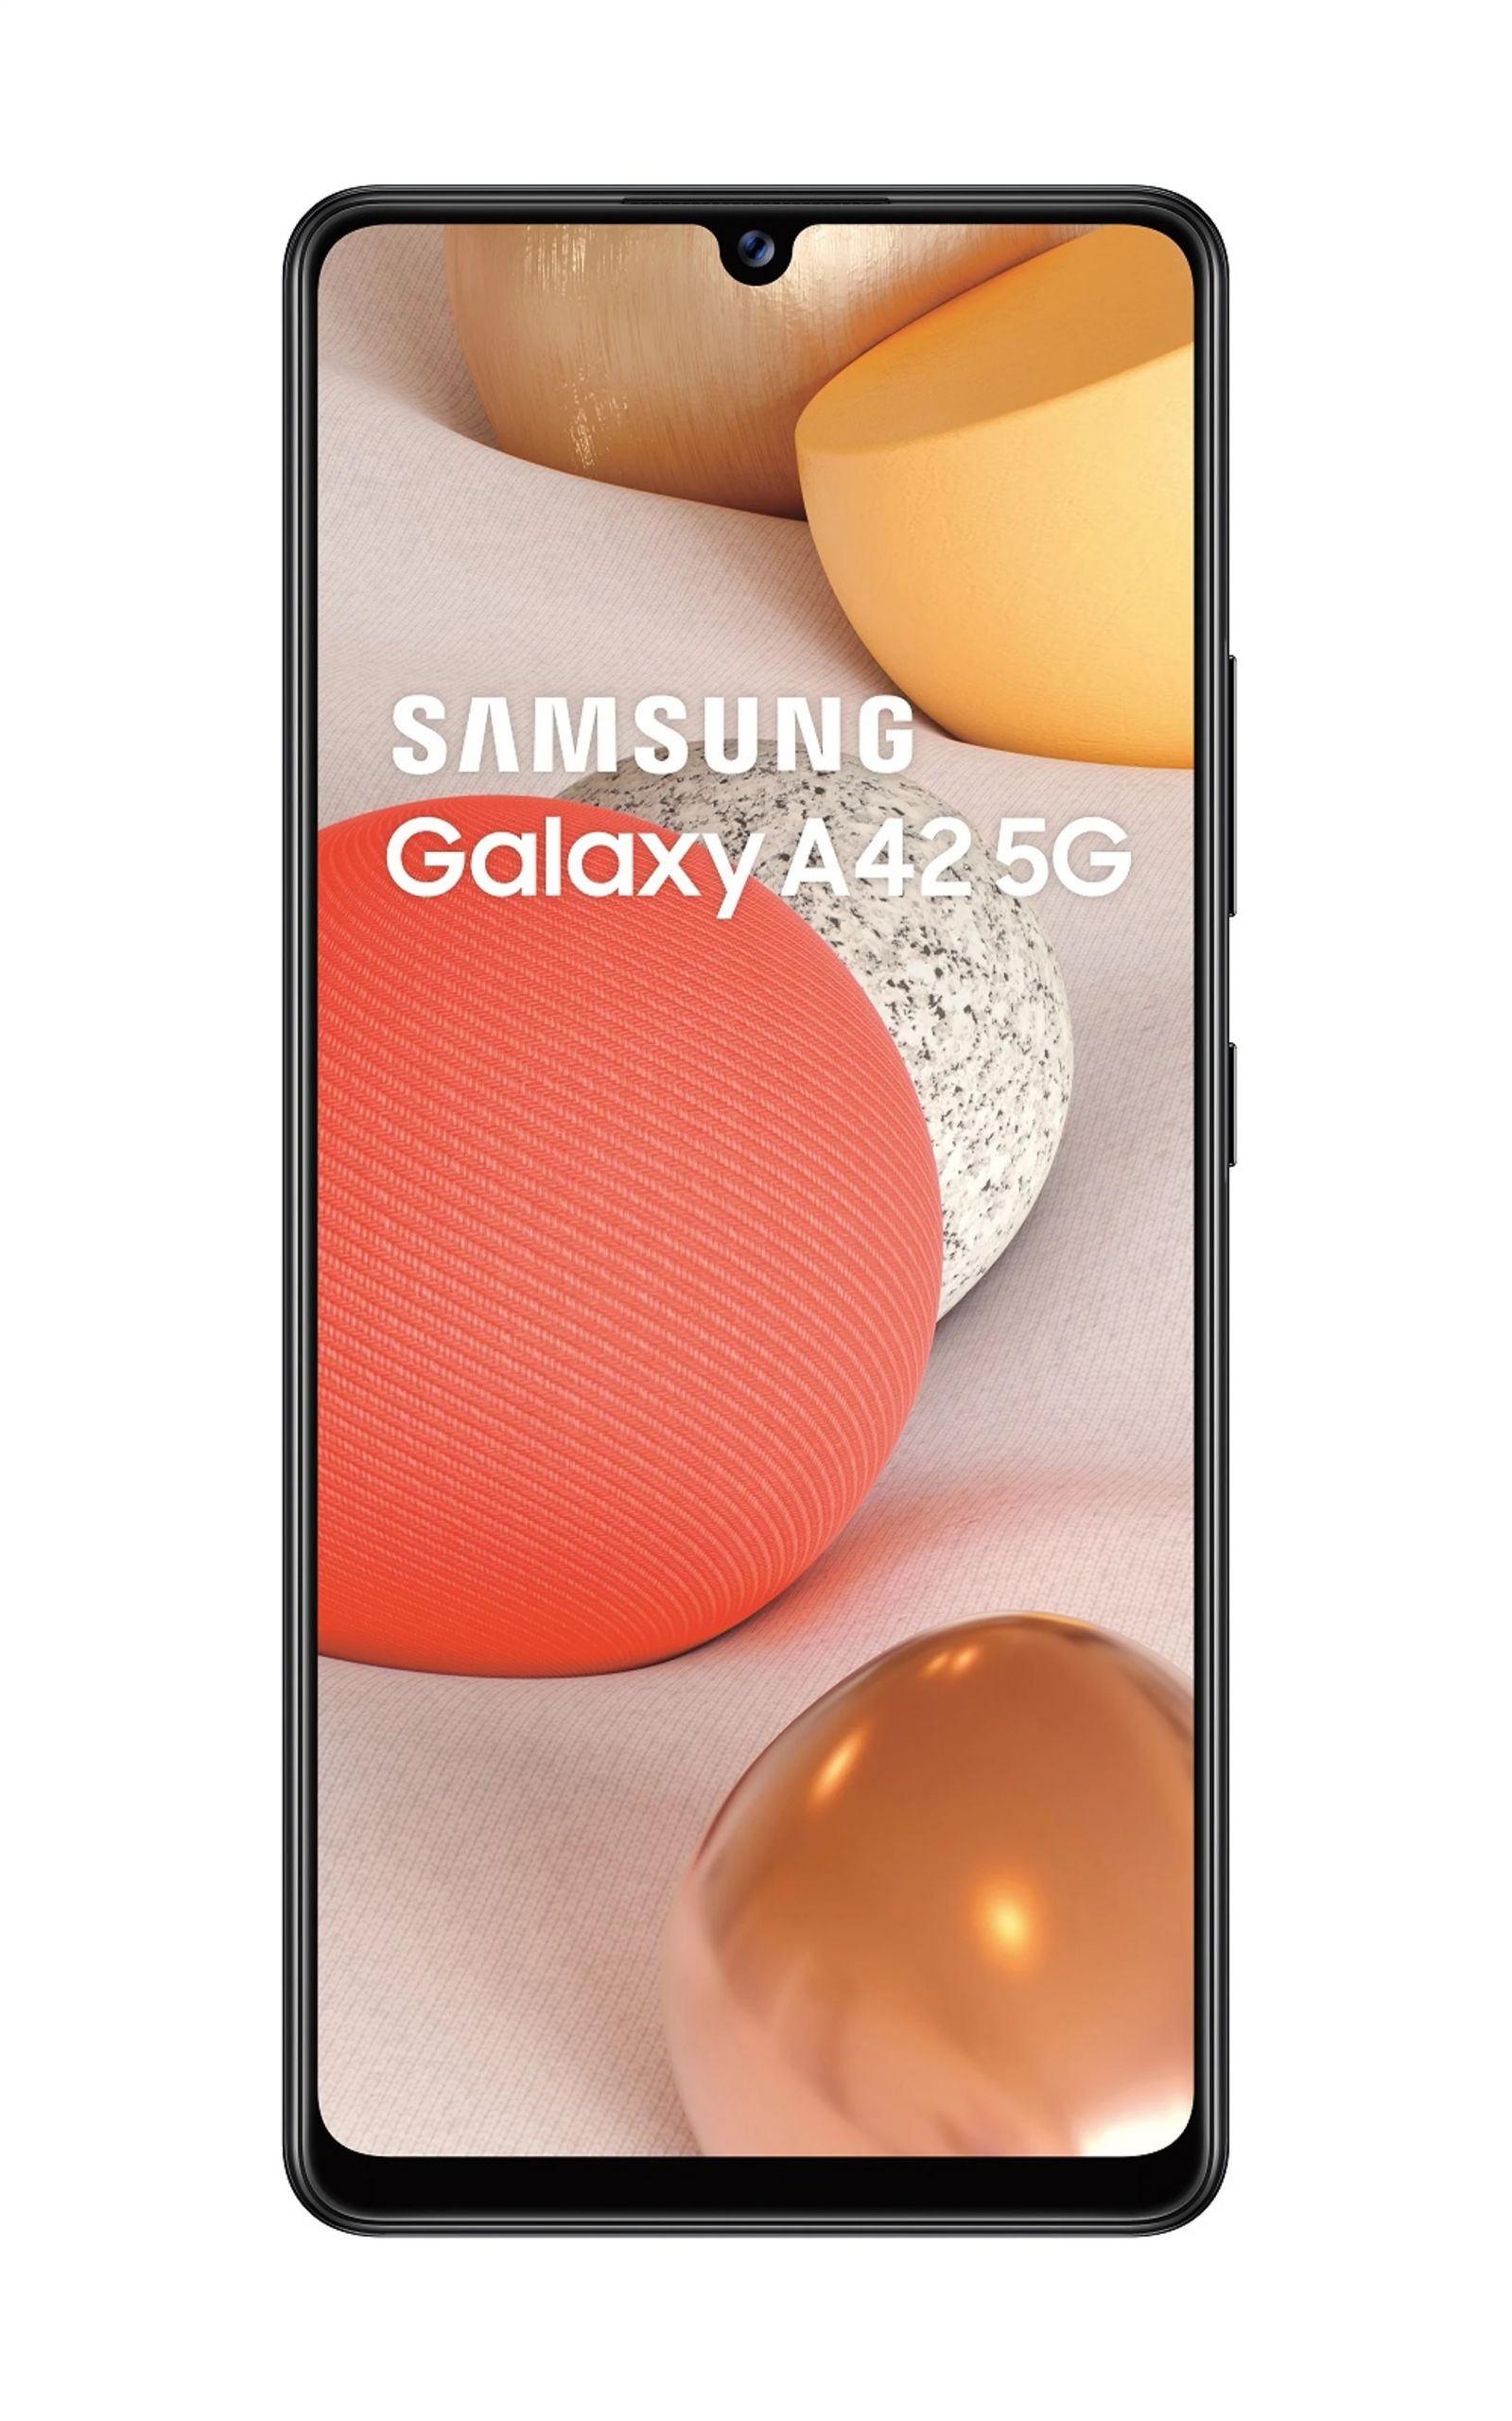 Galaxy-A42-5G-3-1.jpg